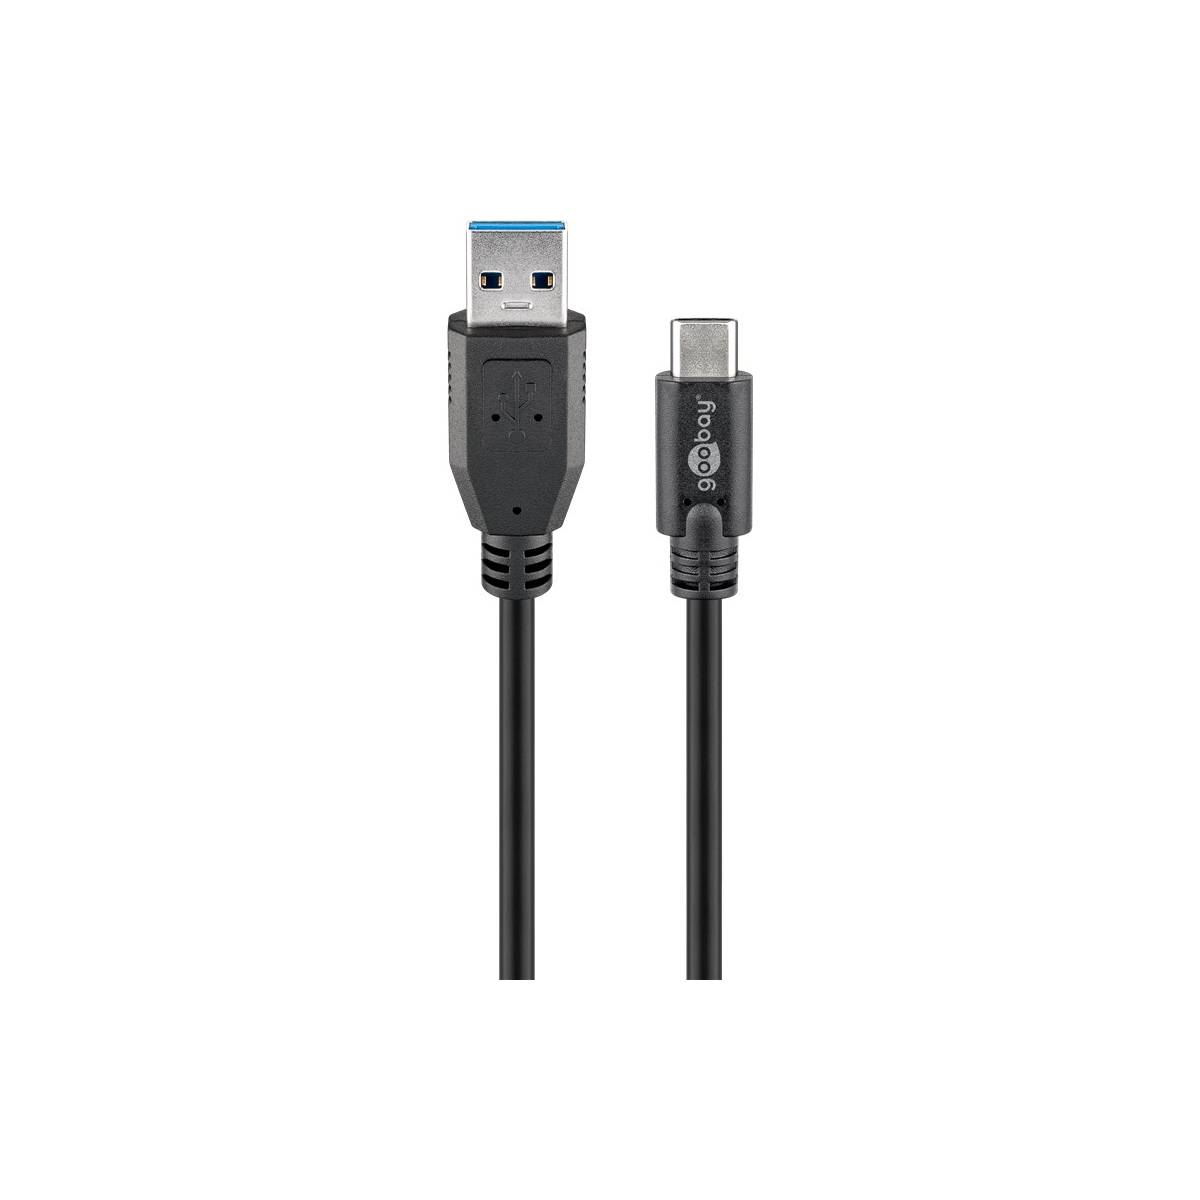 USB 3.0 kabel 1-2m - Dag-til-dag levering